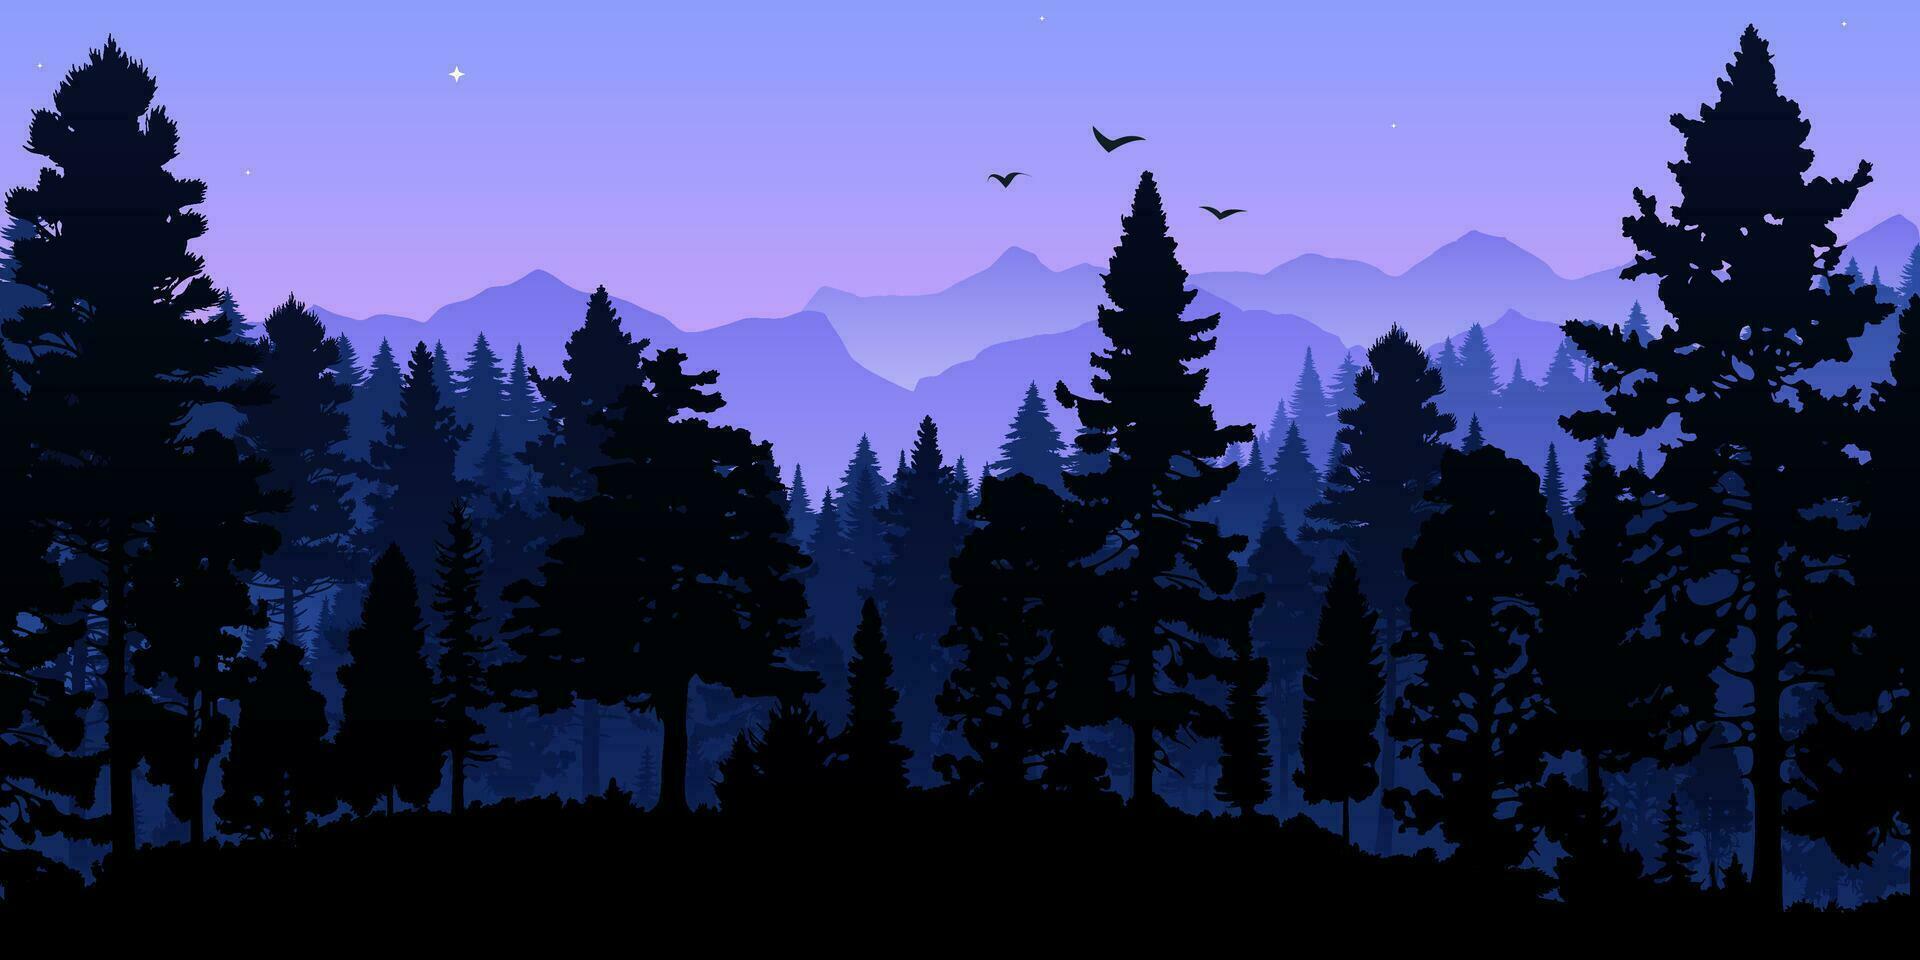 schön Panorama- Aussicht von ein dunkel Wald mit lila und Blau Silhouetten von Bäume und Berge gegen ein violett Himmel. szenisch Landschaft perfekt zum Reise und Abenteuer Hintergründe vektor